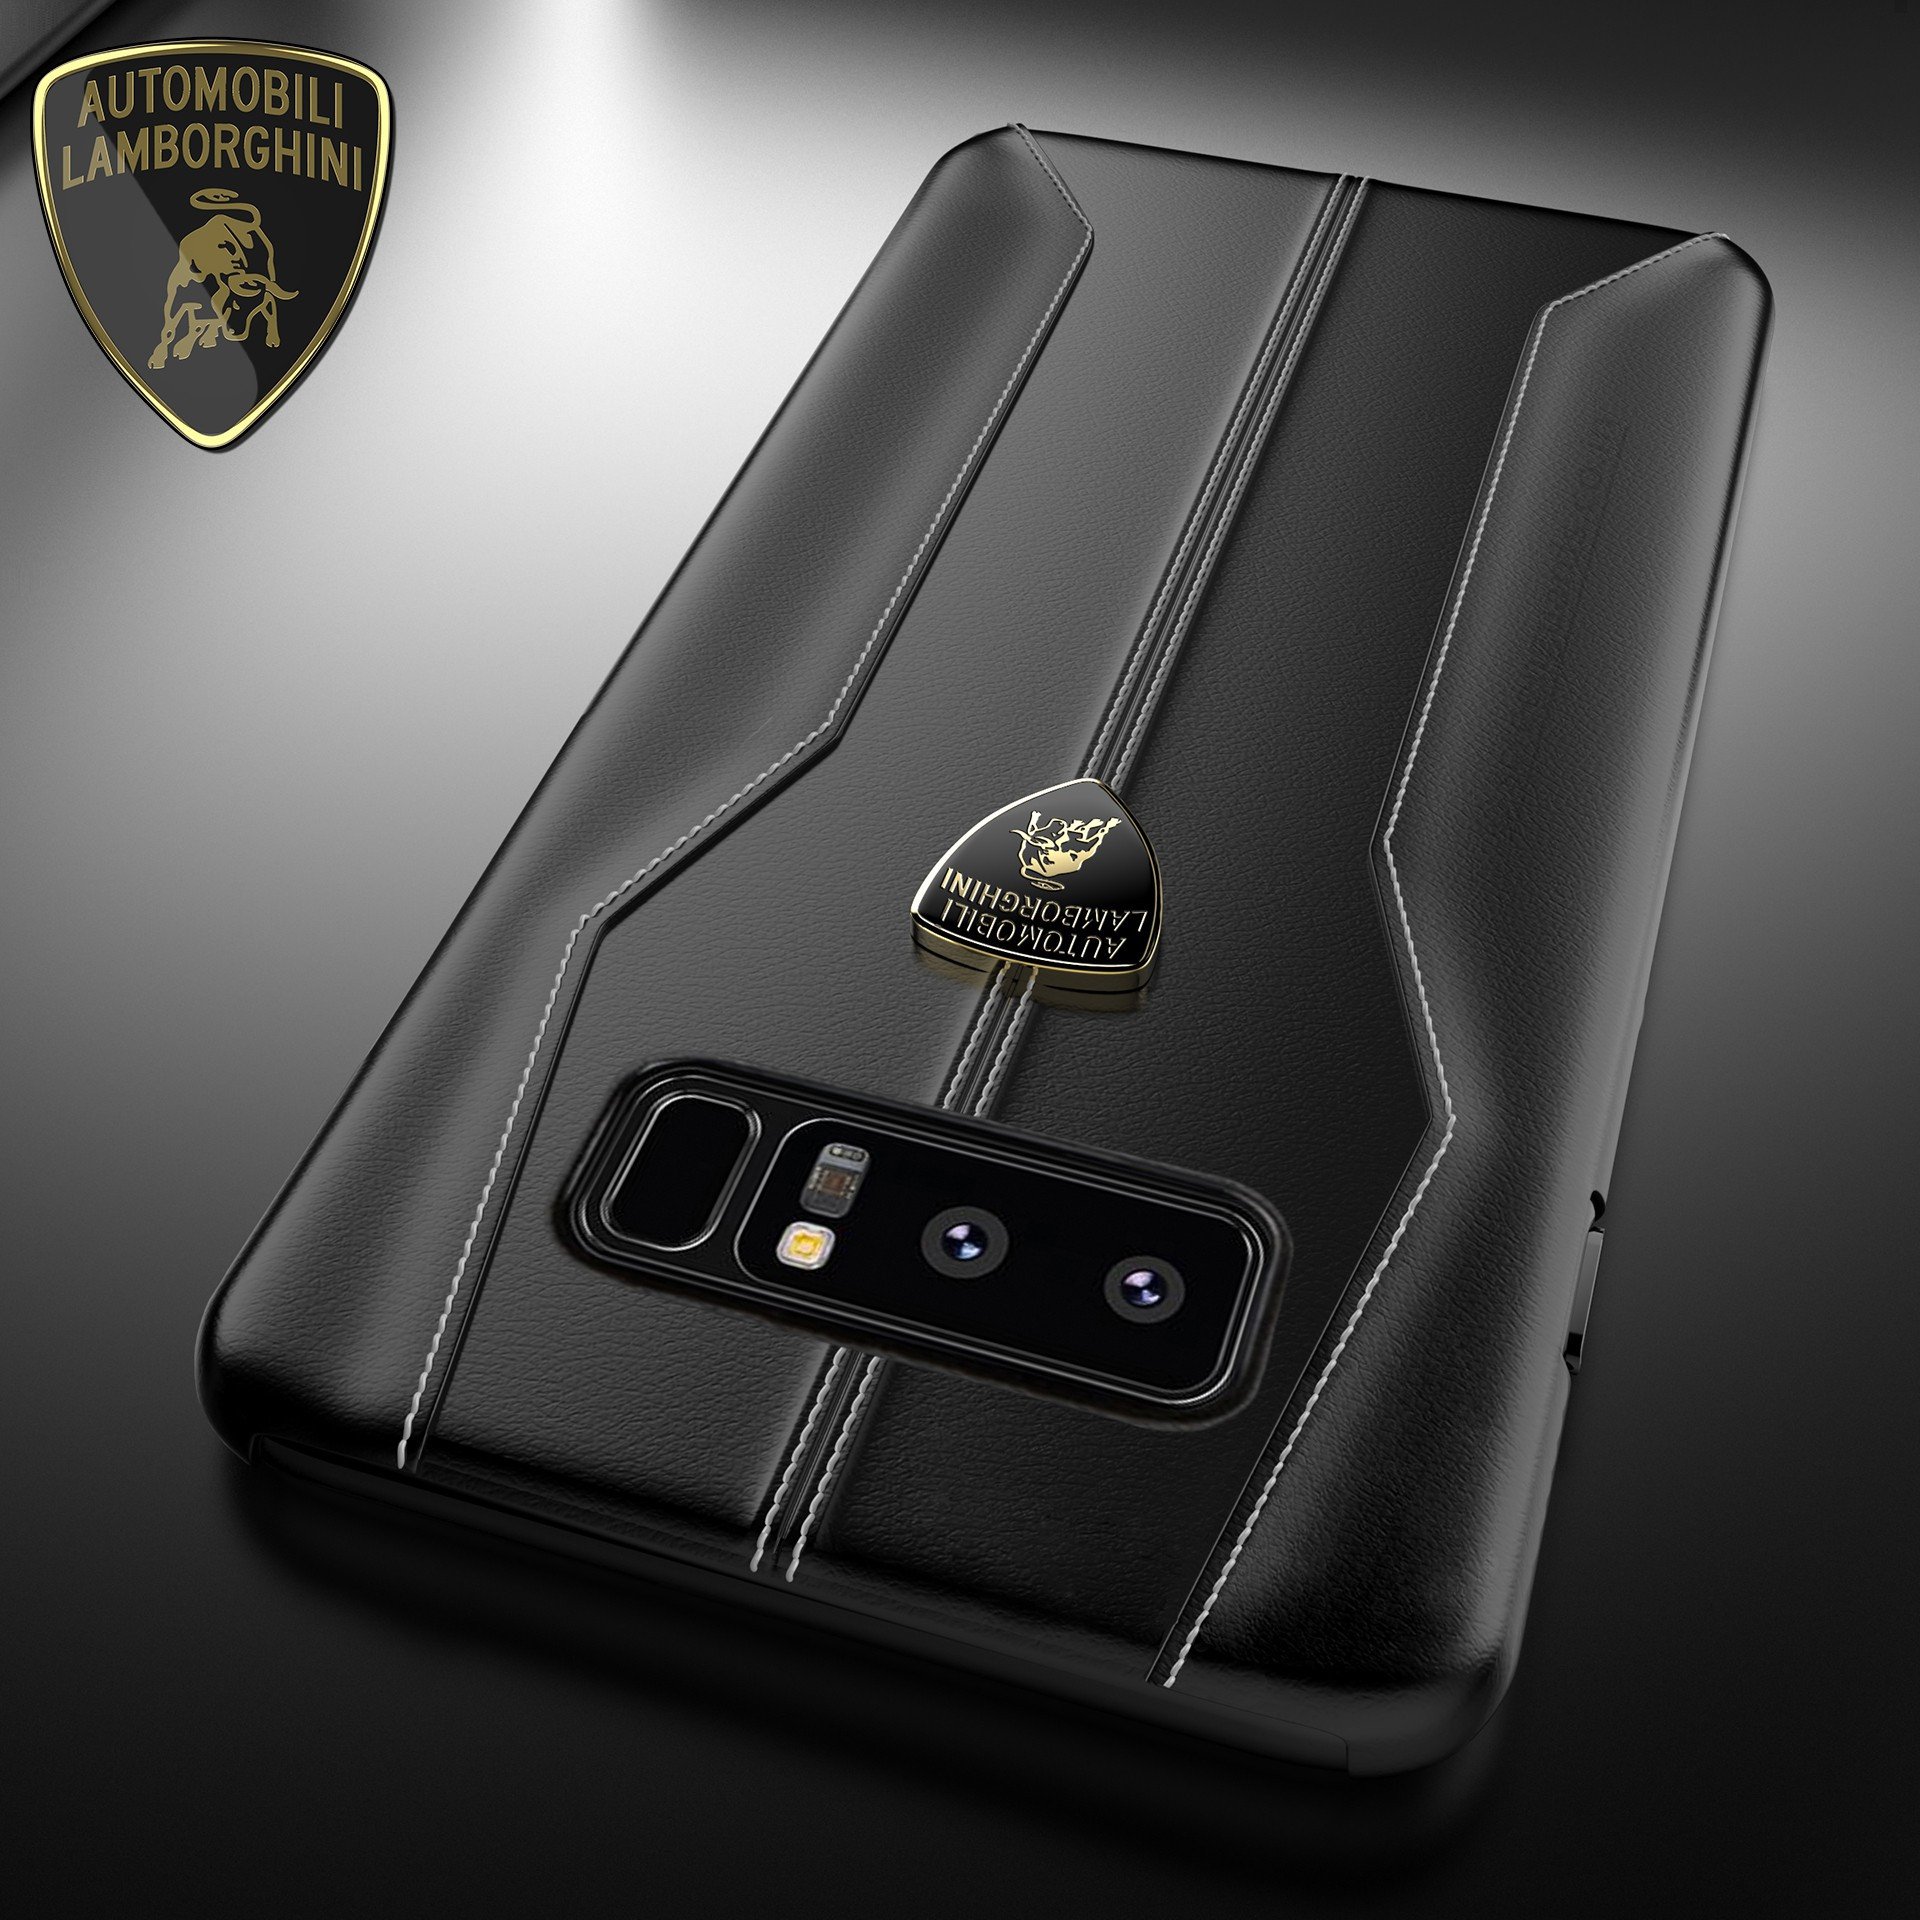 Lamborghini Â® Samsung Galaxy Note 8 Official Huracan D1